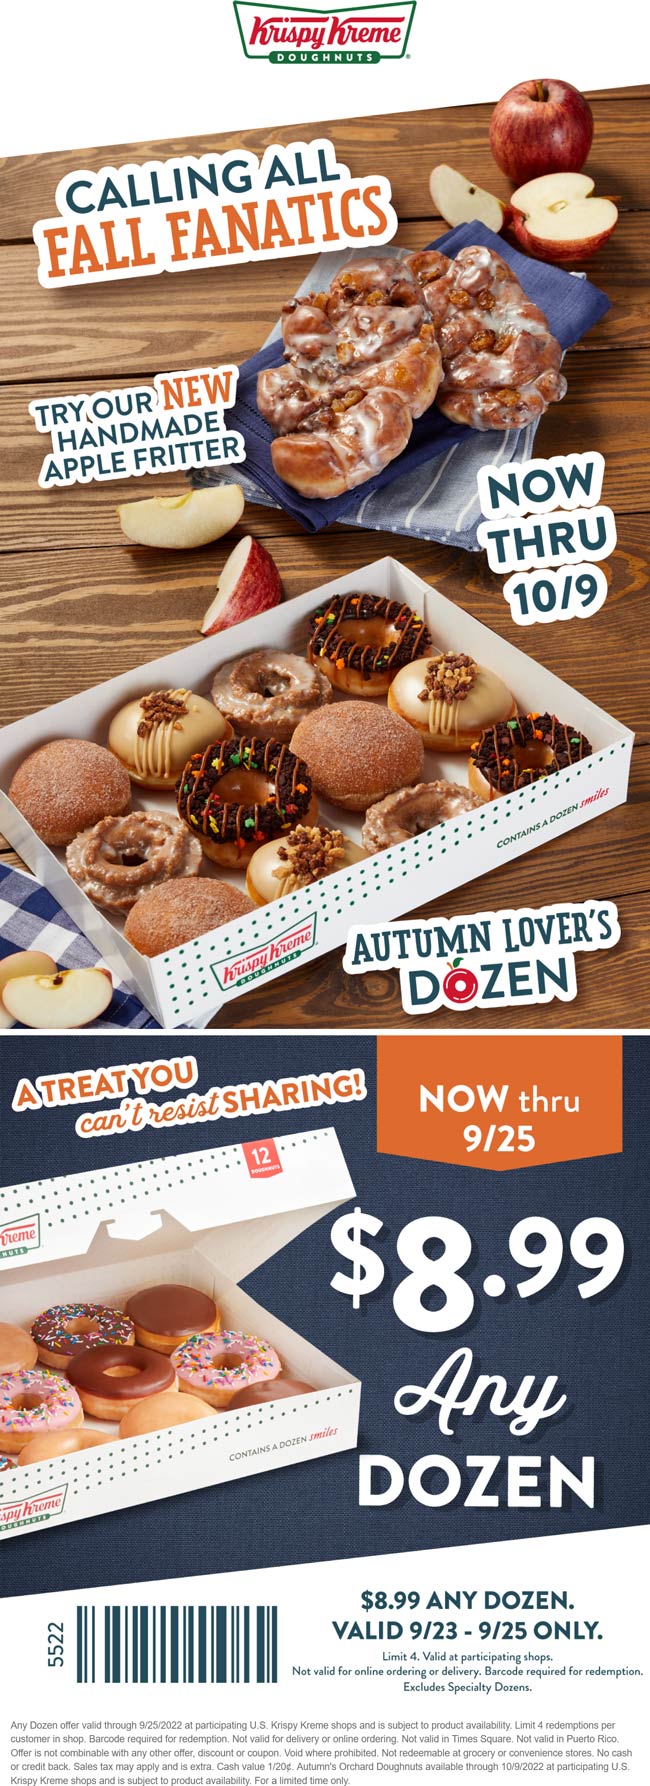 Krispy Kreme restaurants Coupon  Any dozen doughnuts for $9 at Krispy Kreme #krispykreme 